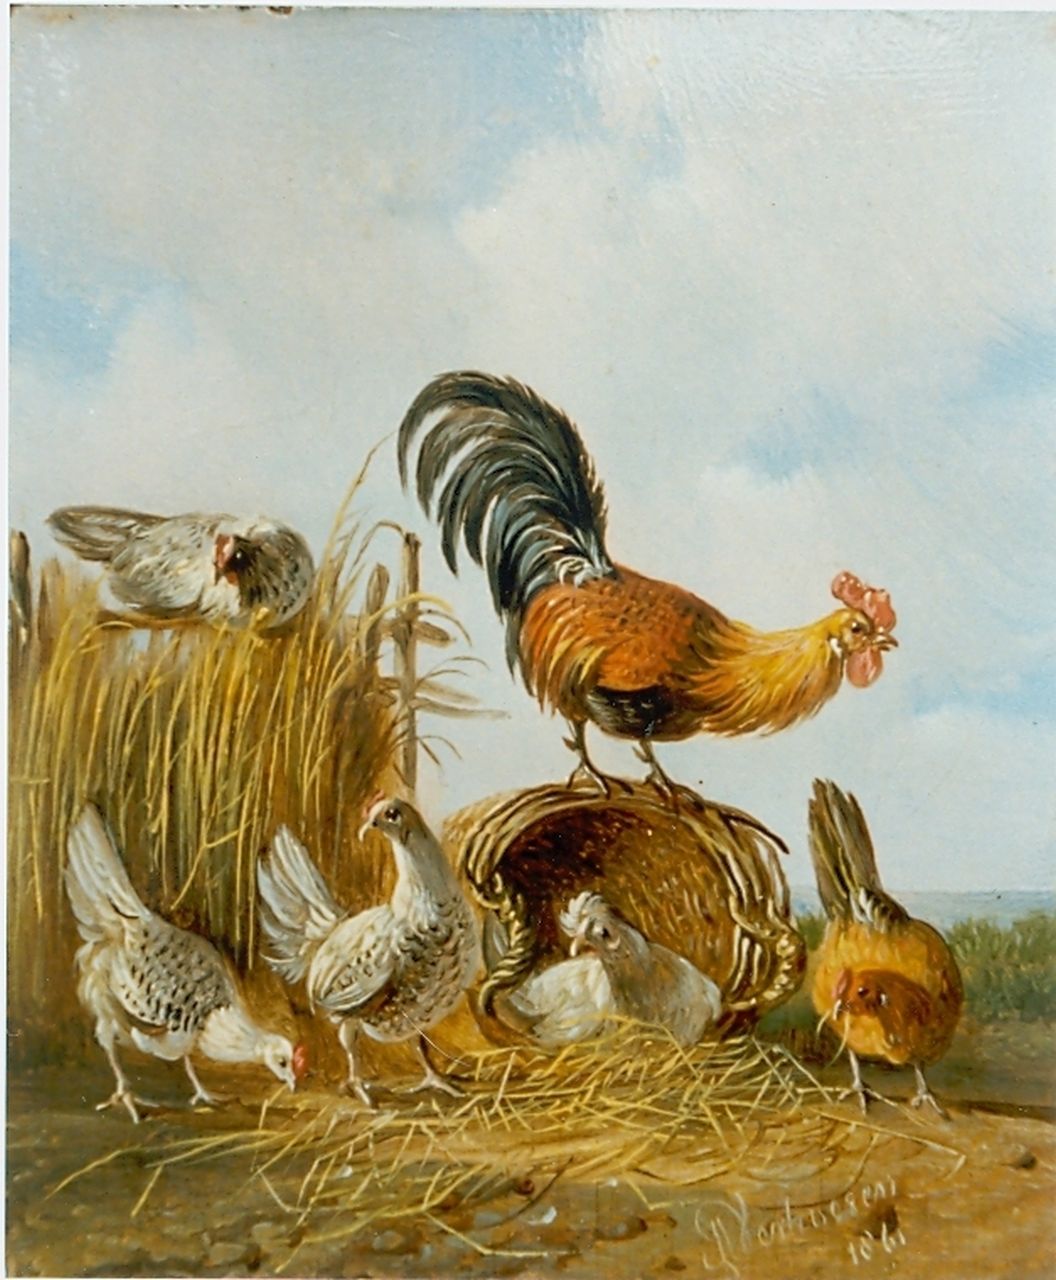 Verhoesen A.  | Albertus Verhoesen, Haan met zijn kippen, olieverf op paneel 12,5 x 10,2 cm, gesigneerd rechtsonder en gedateerd 1861